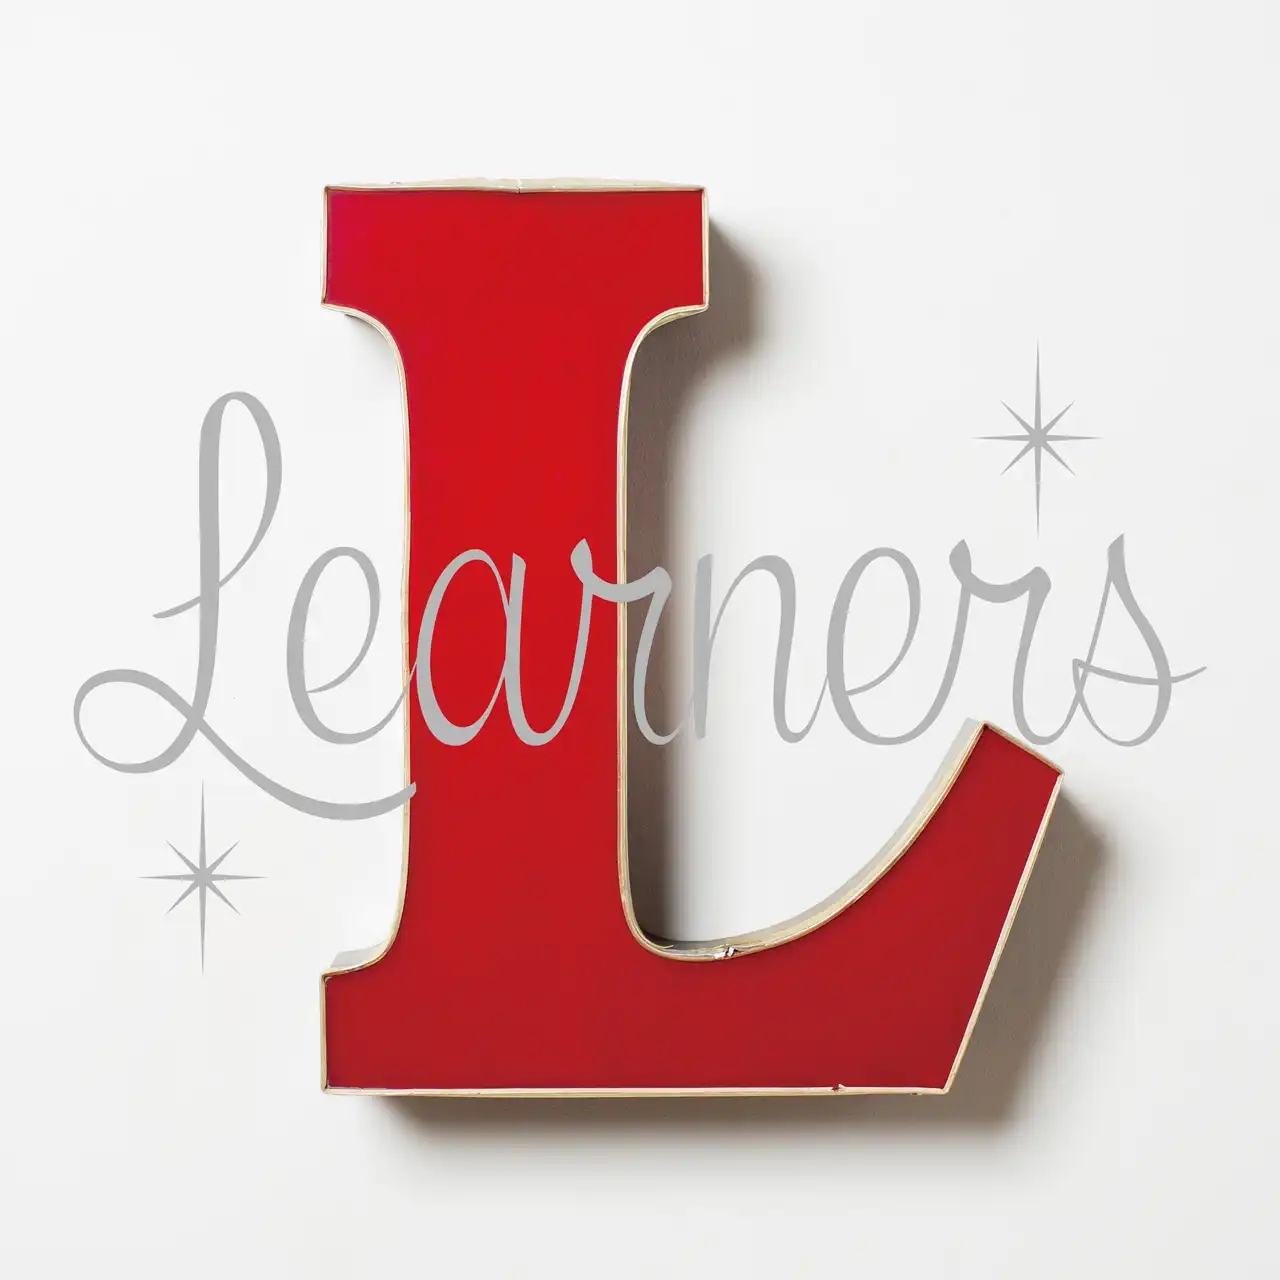 LEARNERS / SAME